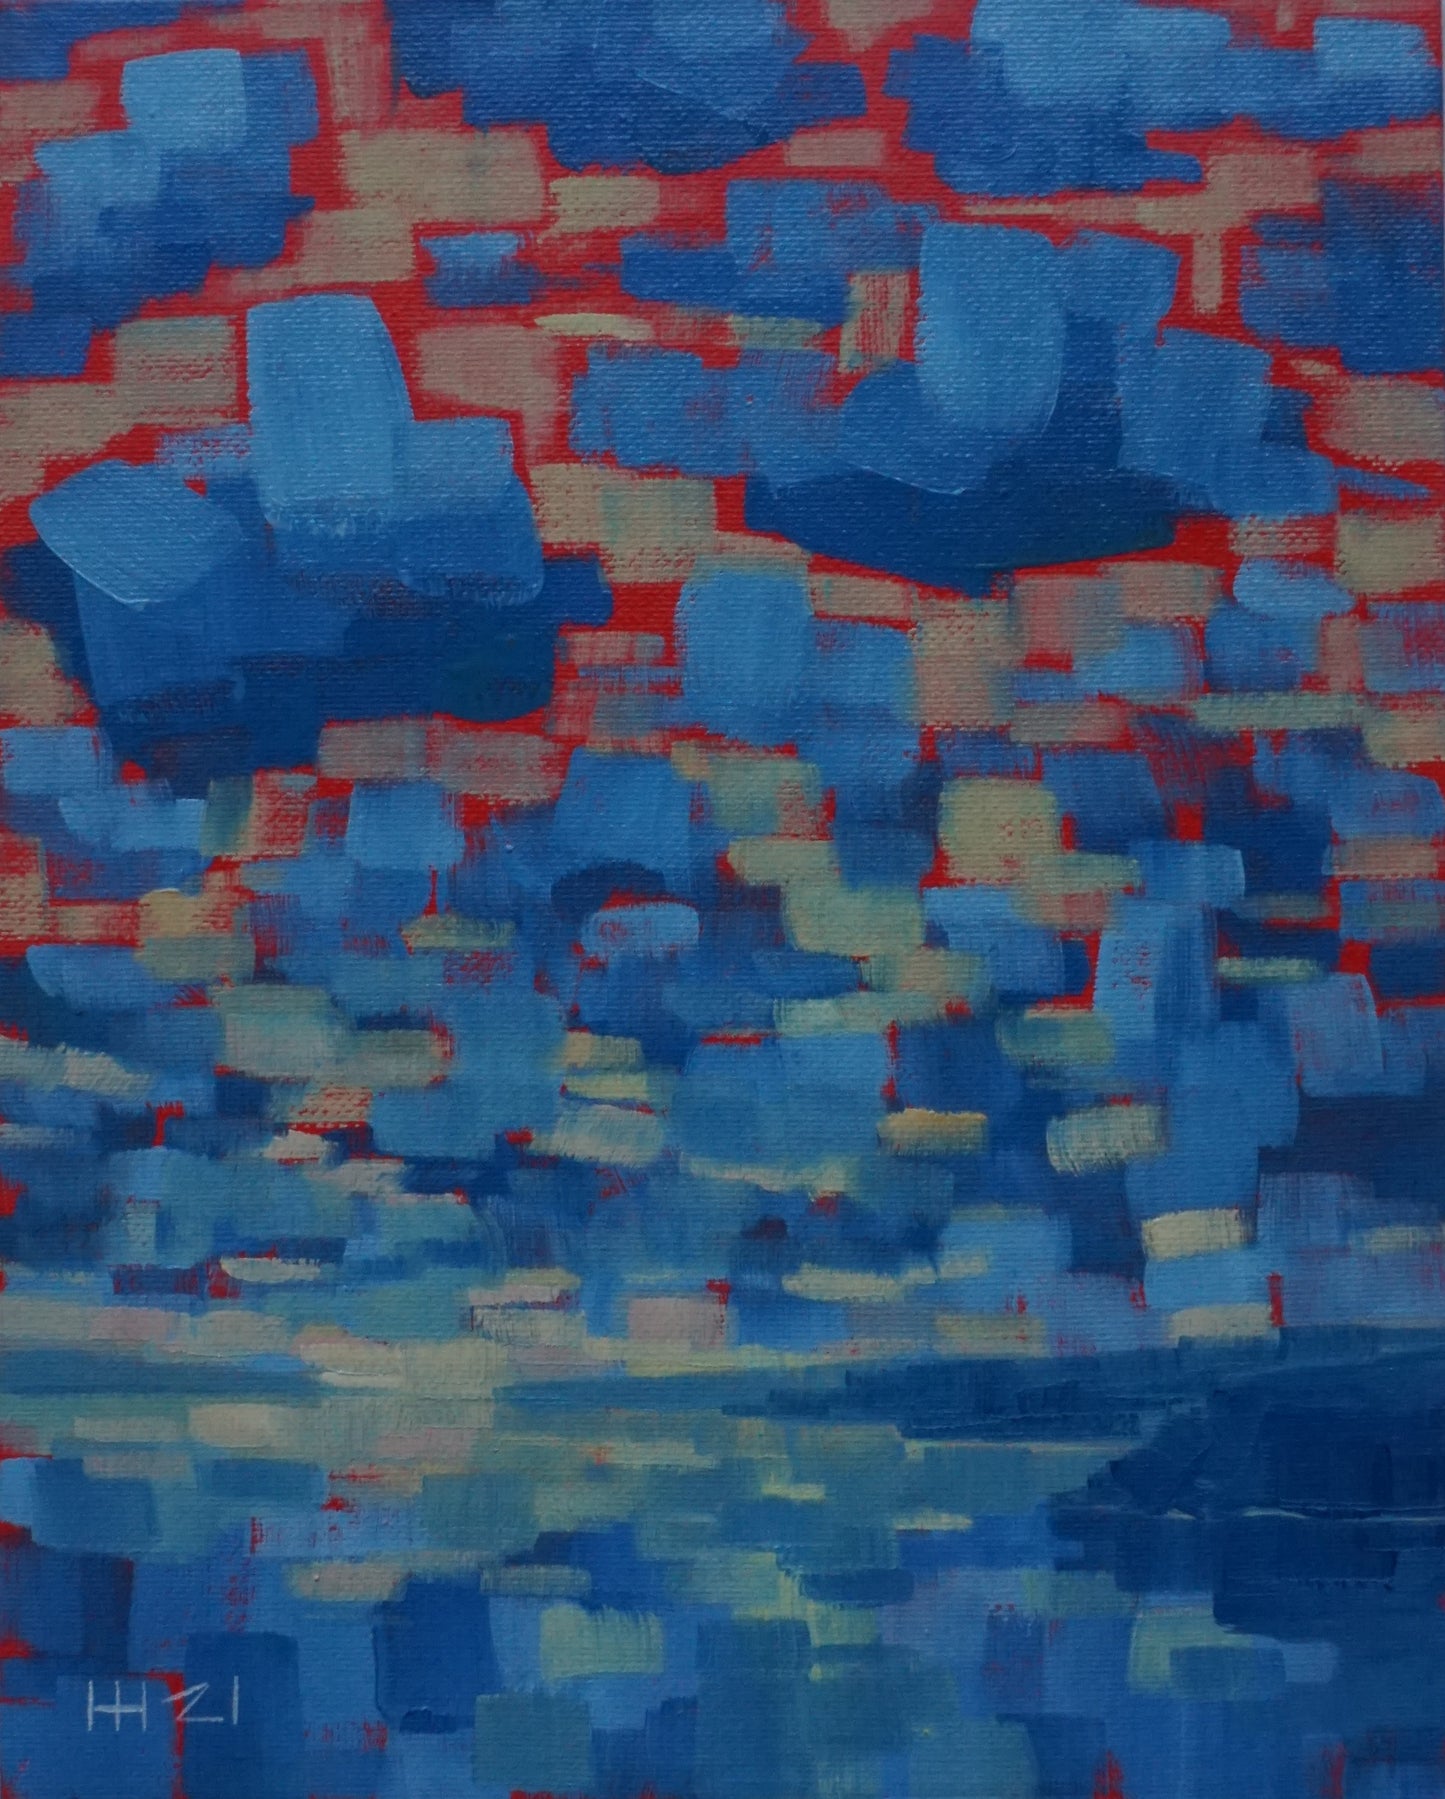 Broken sundown- 20x25.5cm / Oil painting on canvas panel